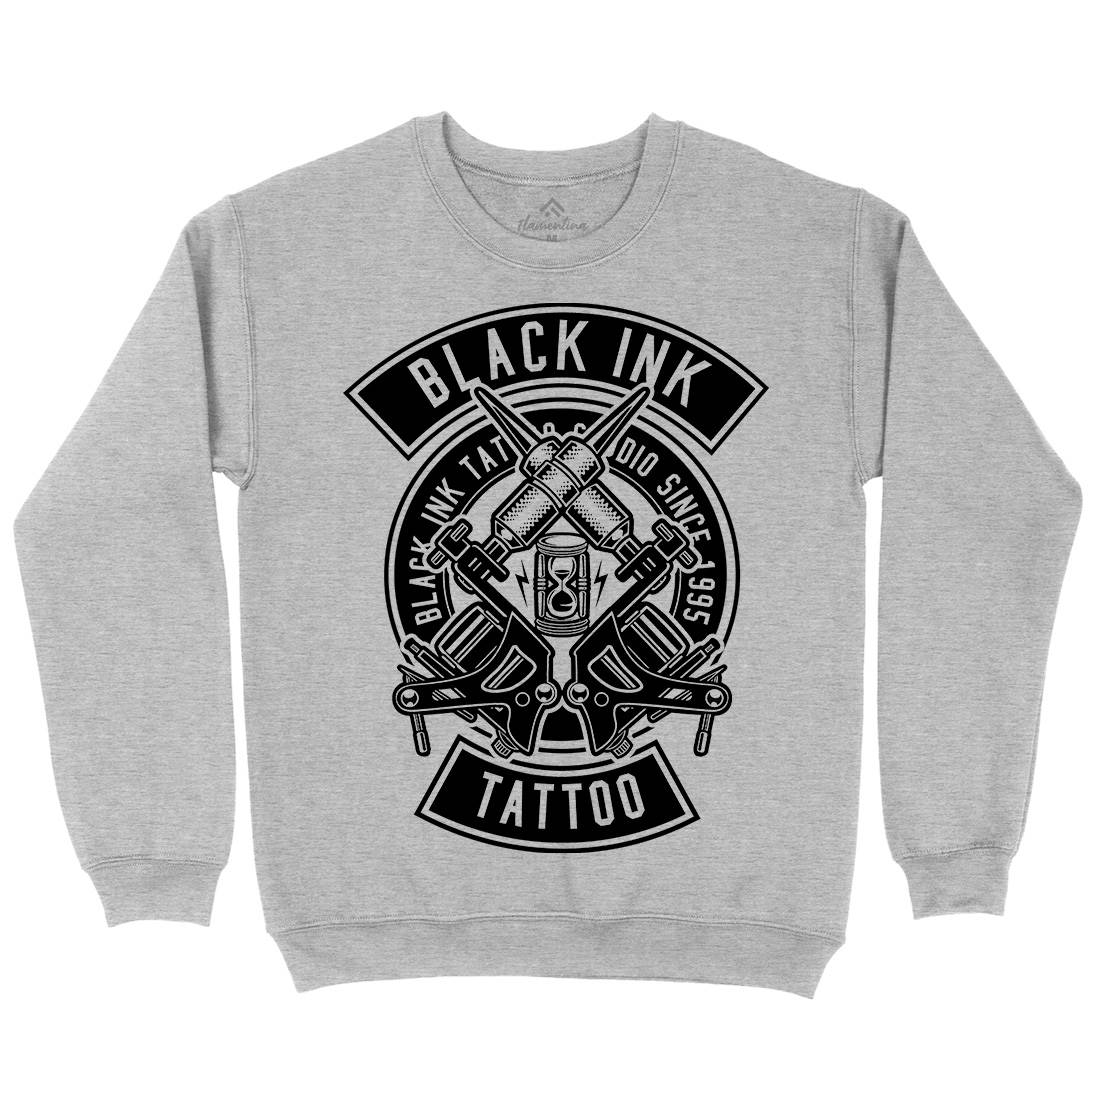 Black Ink Kids Crew Neck Sweatshirt Tattoo B500